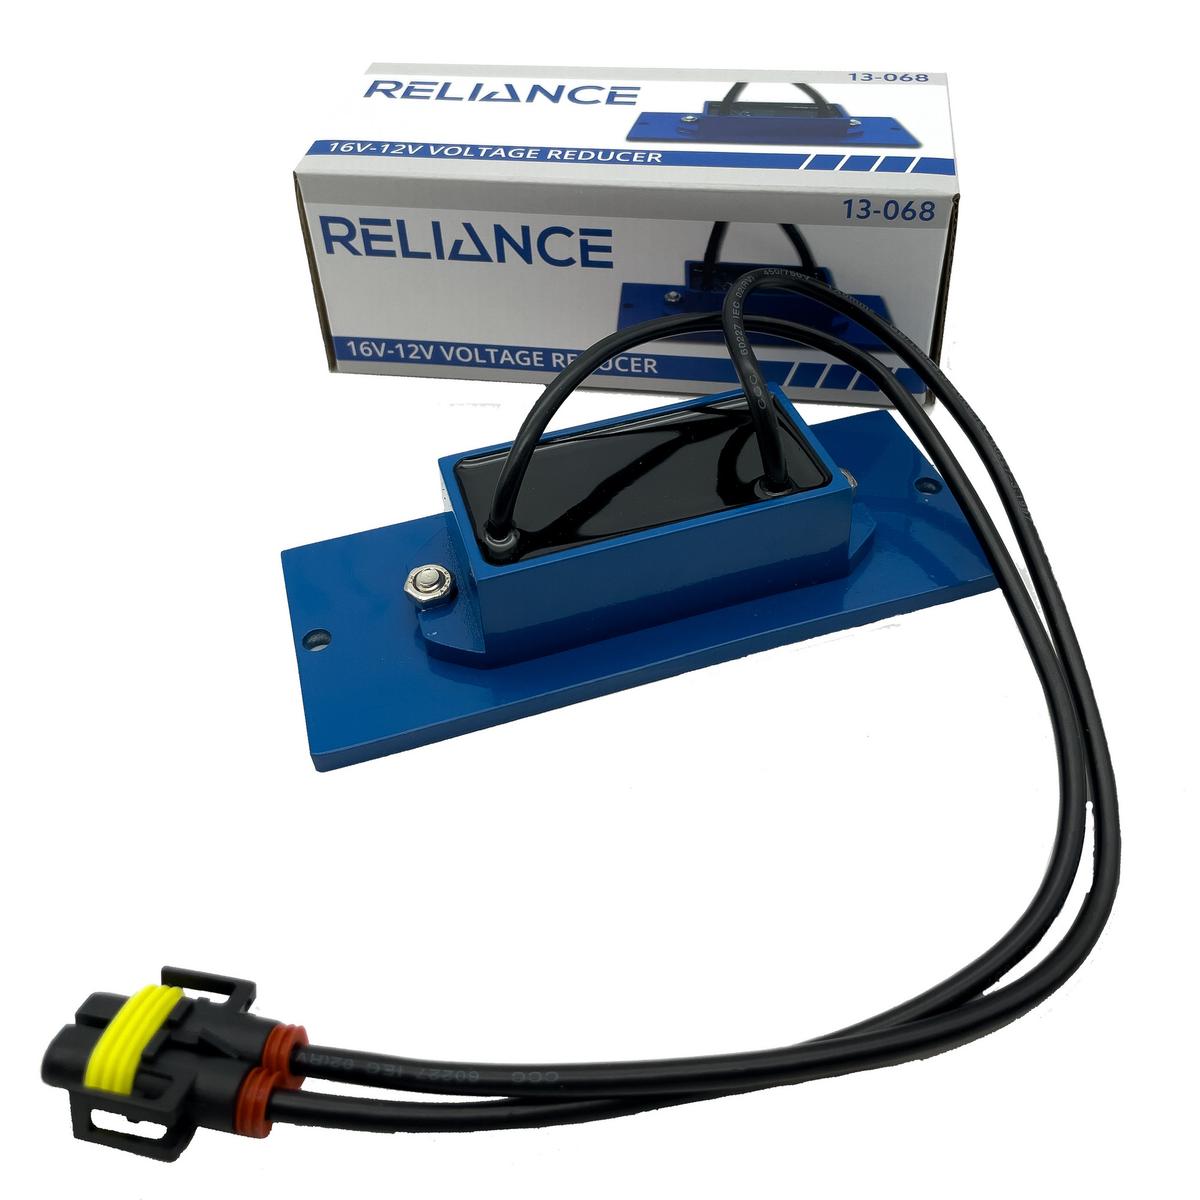 RELIANCE&#8482; 16V to 12V Voltage Reducer